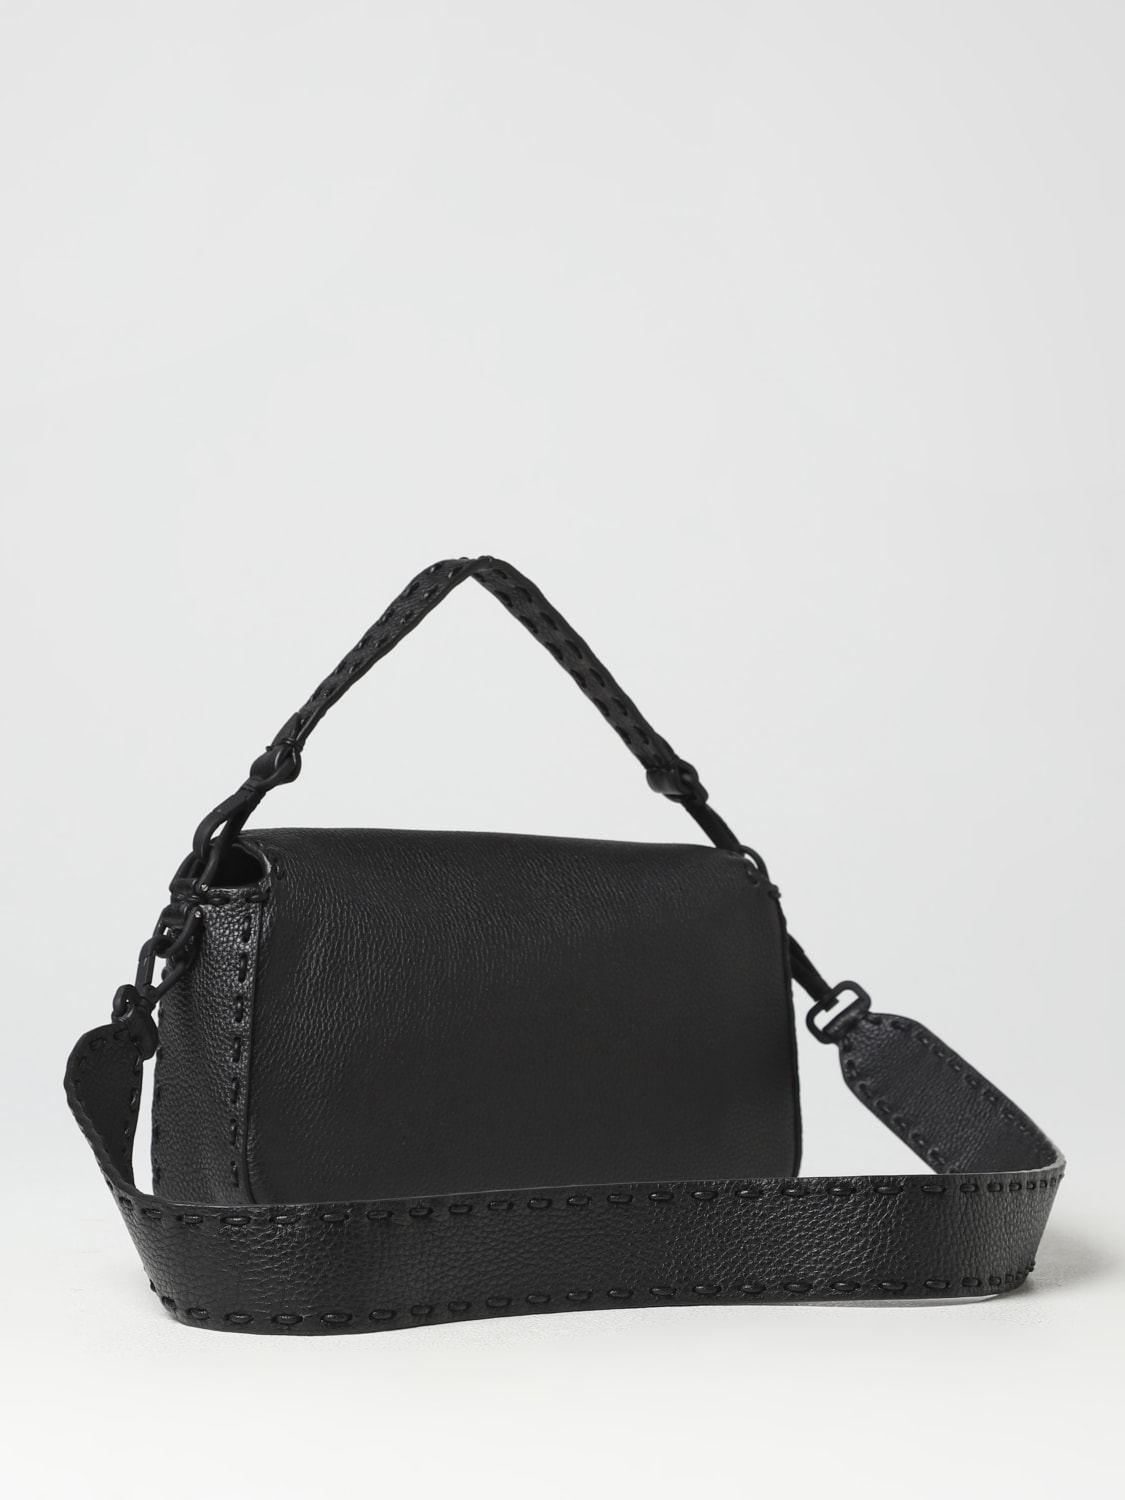 Baguette Large - Black leather bag